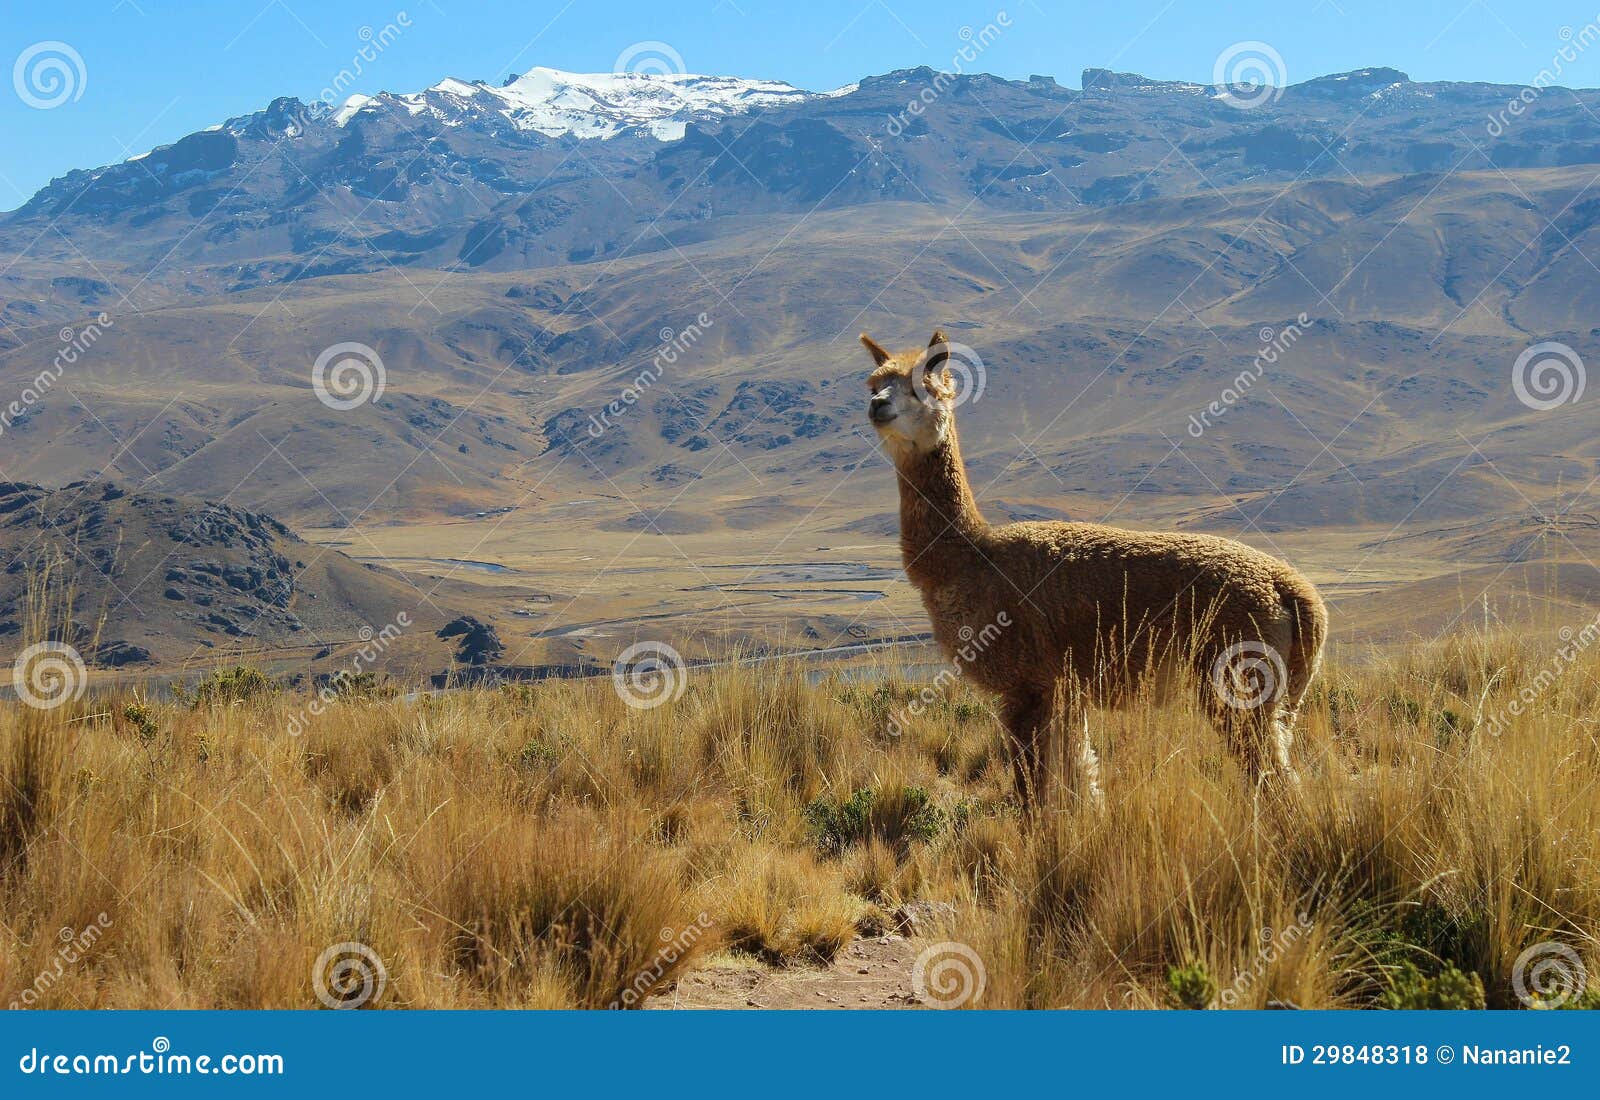 alpaca on mountain top